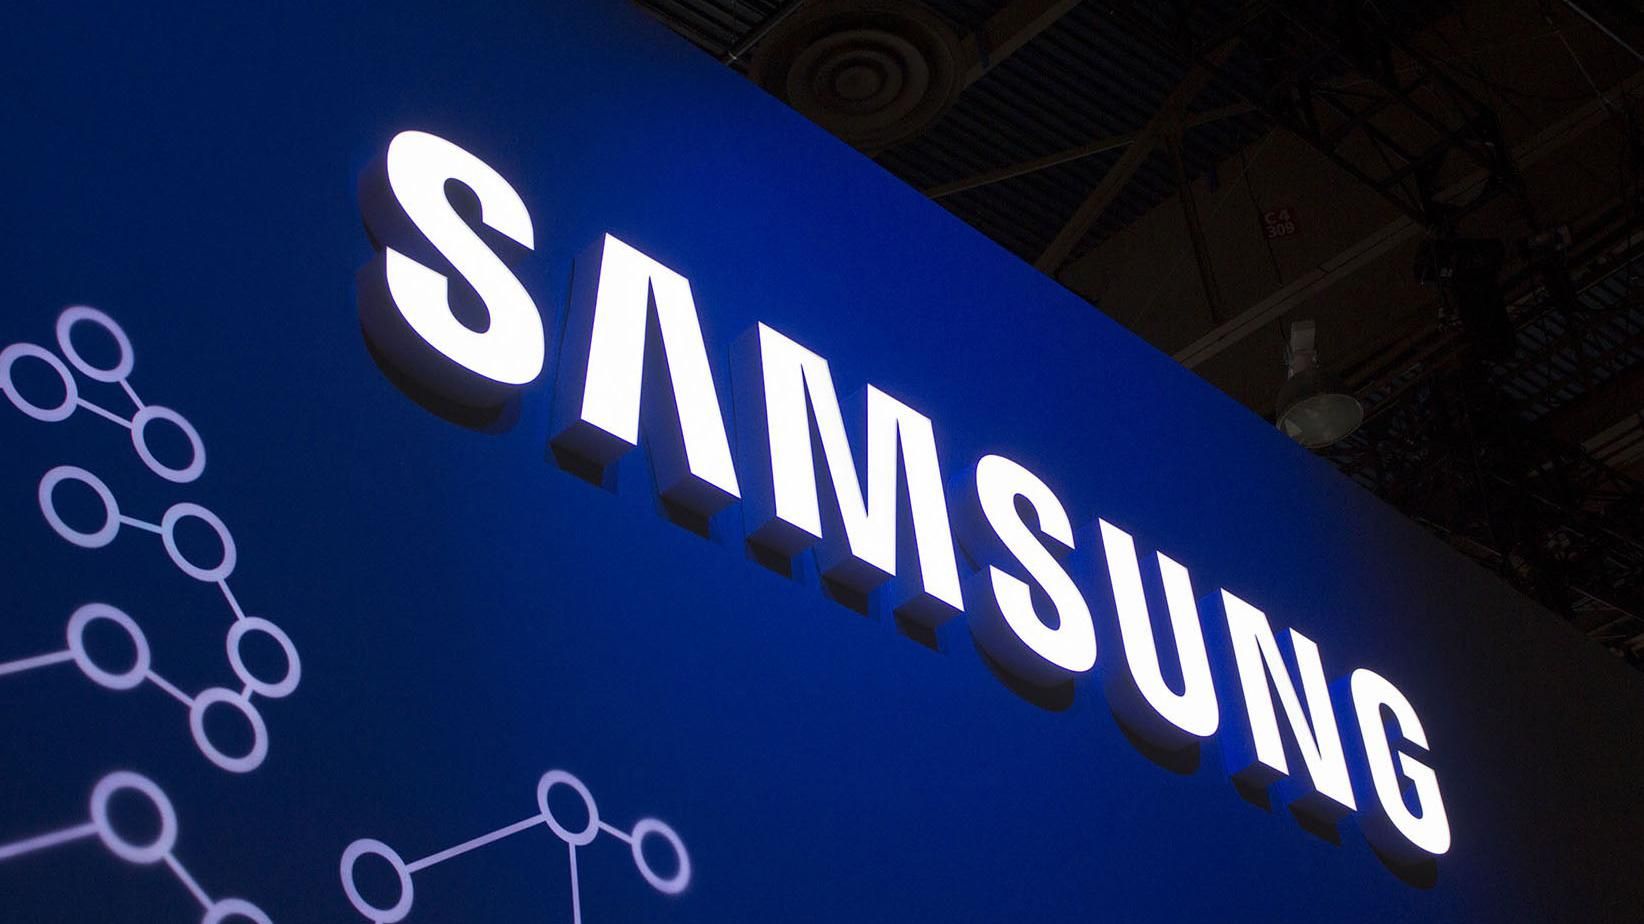 Samsung S10: в сети появились фото Samsung Galaxy S10